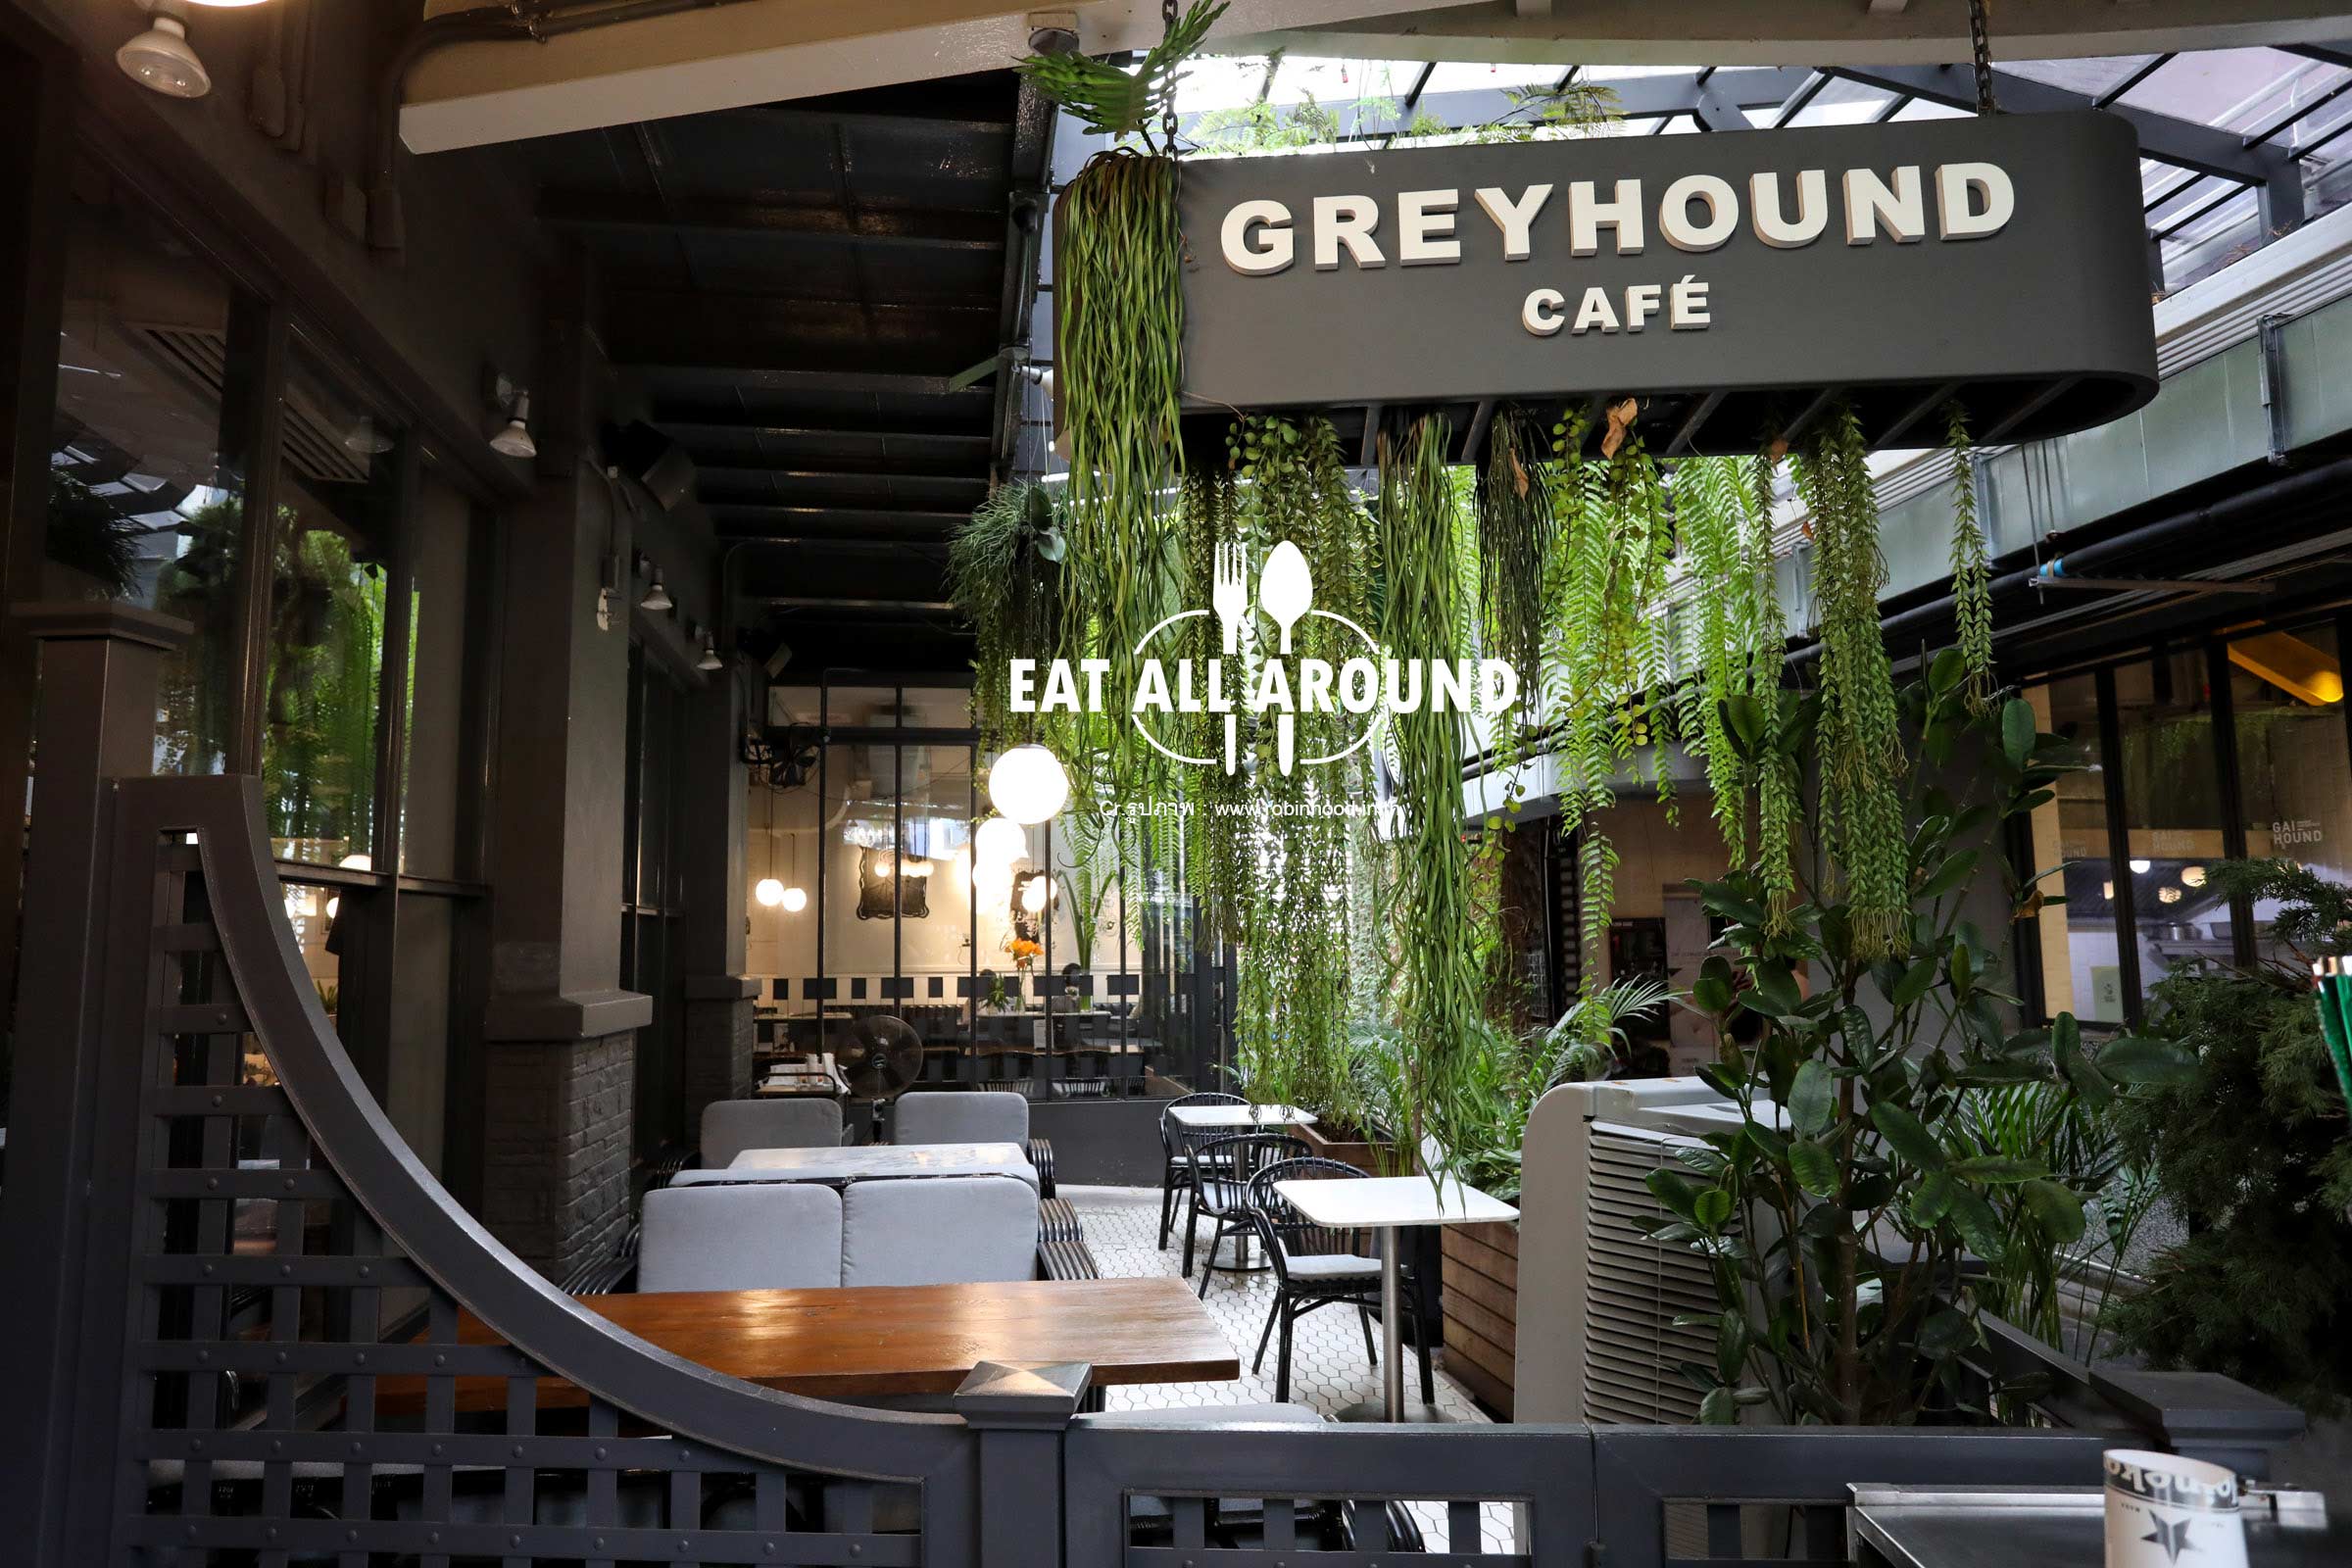 Greyhound Cafe ตำนาน 21 ปี จากแฟชั่นคาเฟ่สู่ร้านอาหารยอดฮิต 